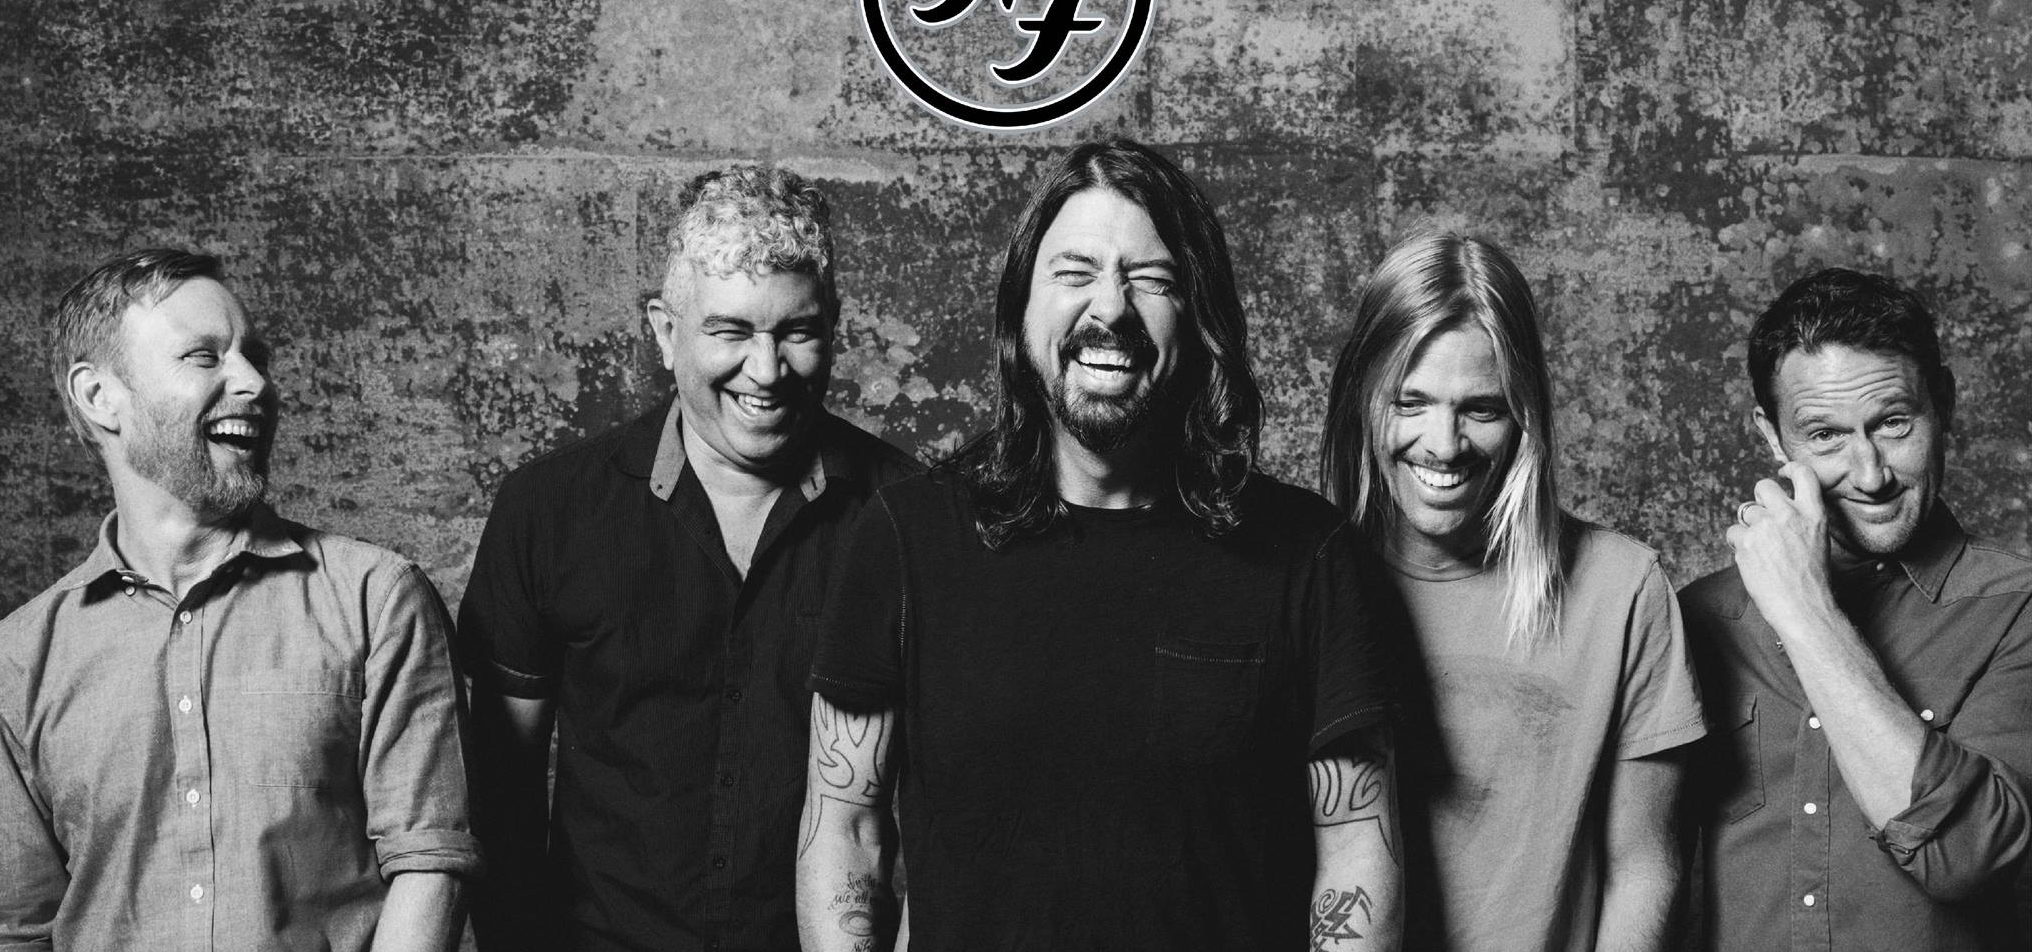 ชาวร็อกห้ามพลาด Foo Fighters live Bangkok 2017  24 สิงหาคม 2560 ณ Impact Challenger Hall 2